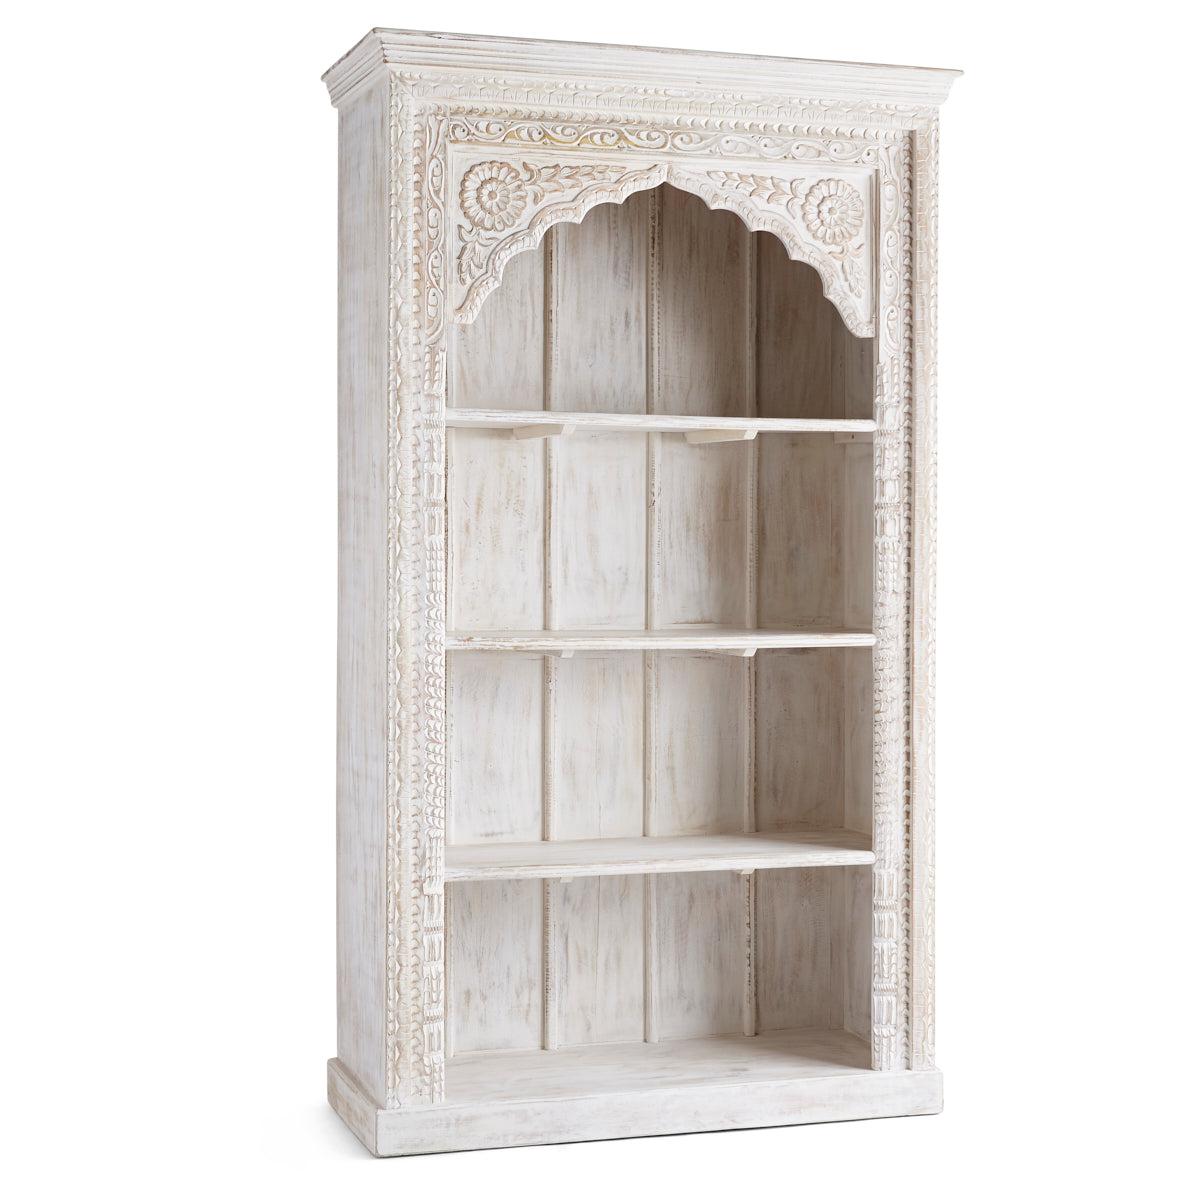 Maharaja's Bookcase